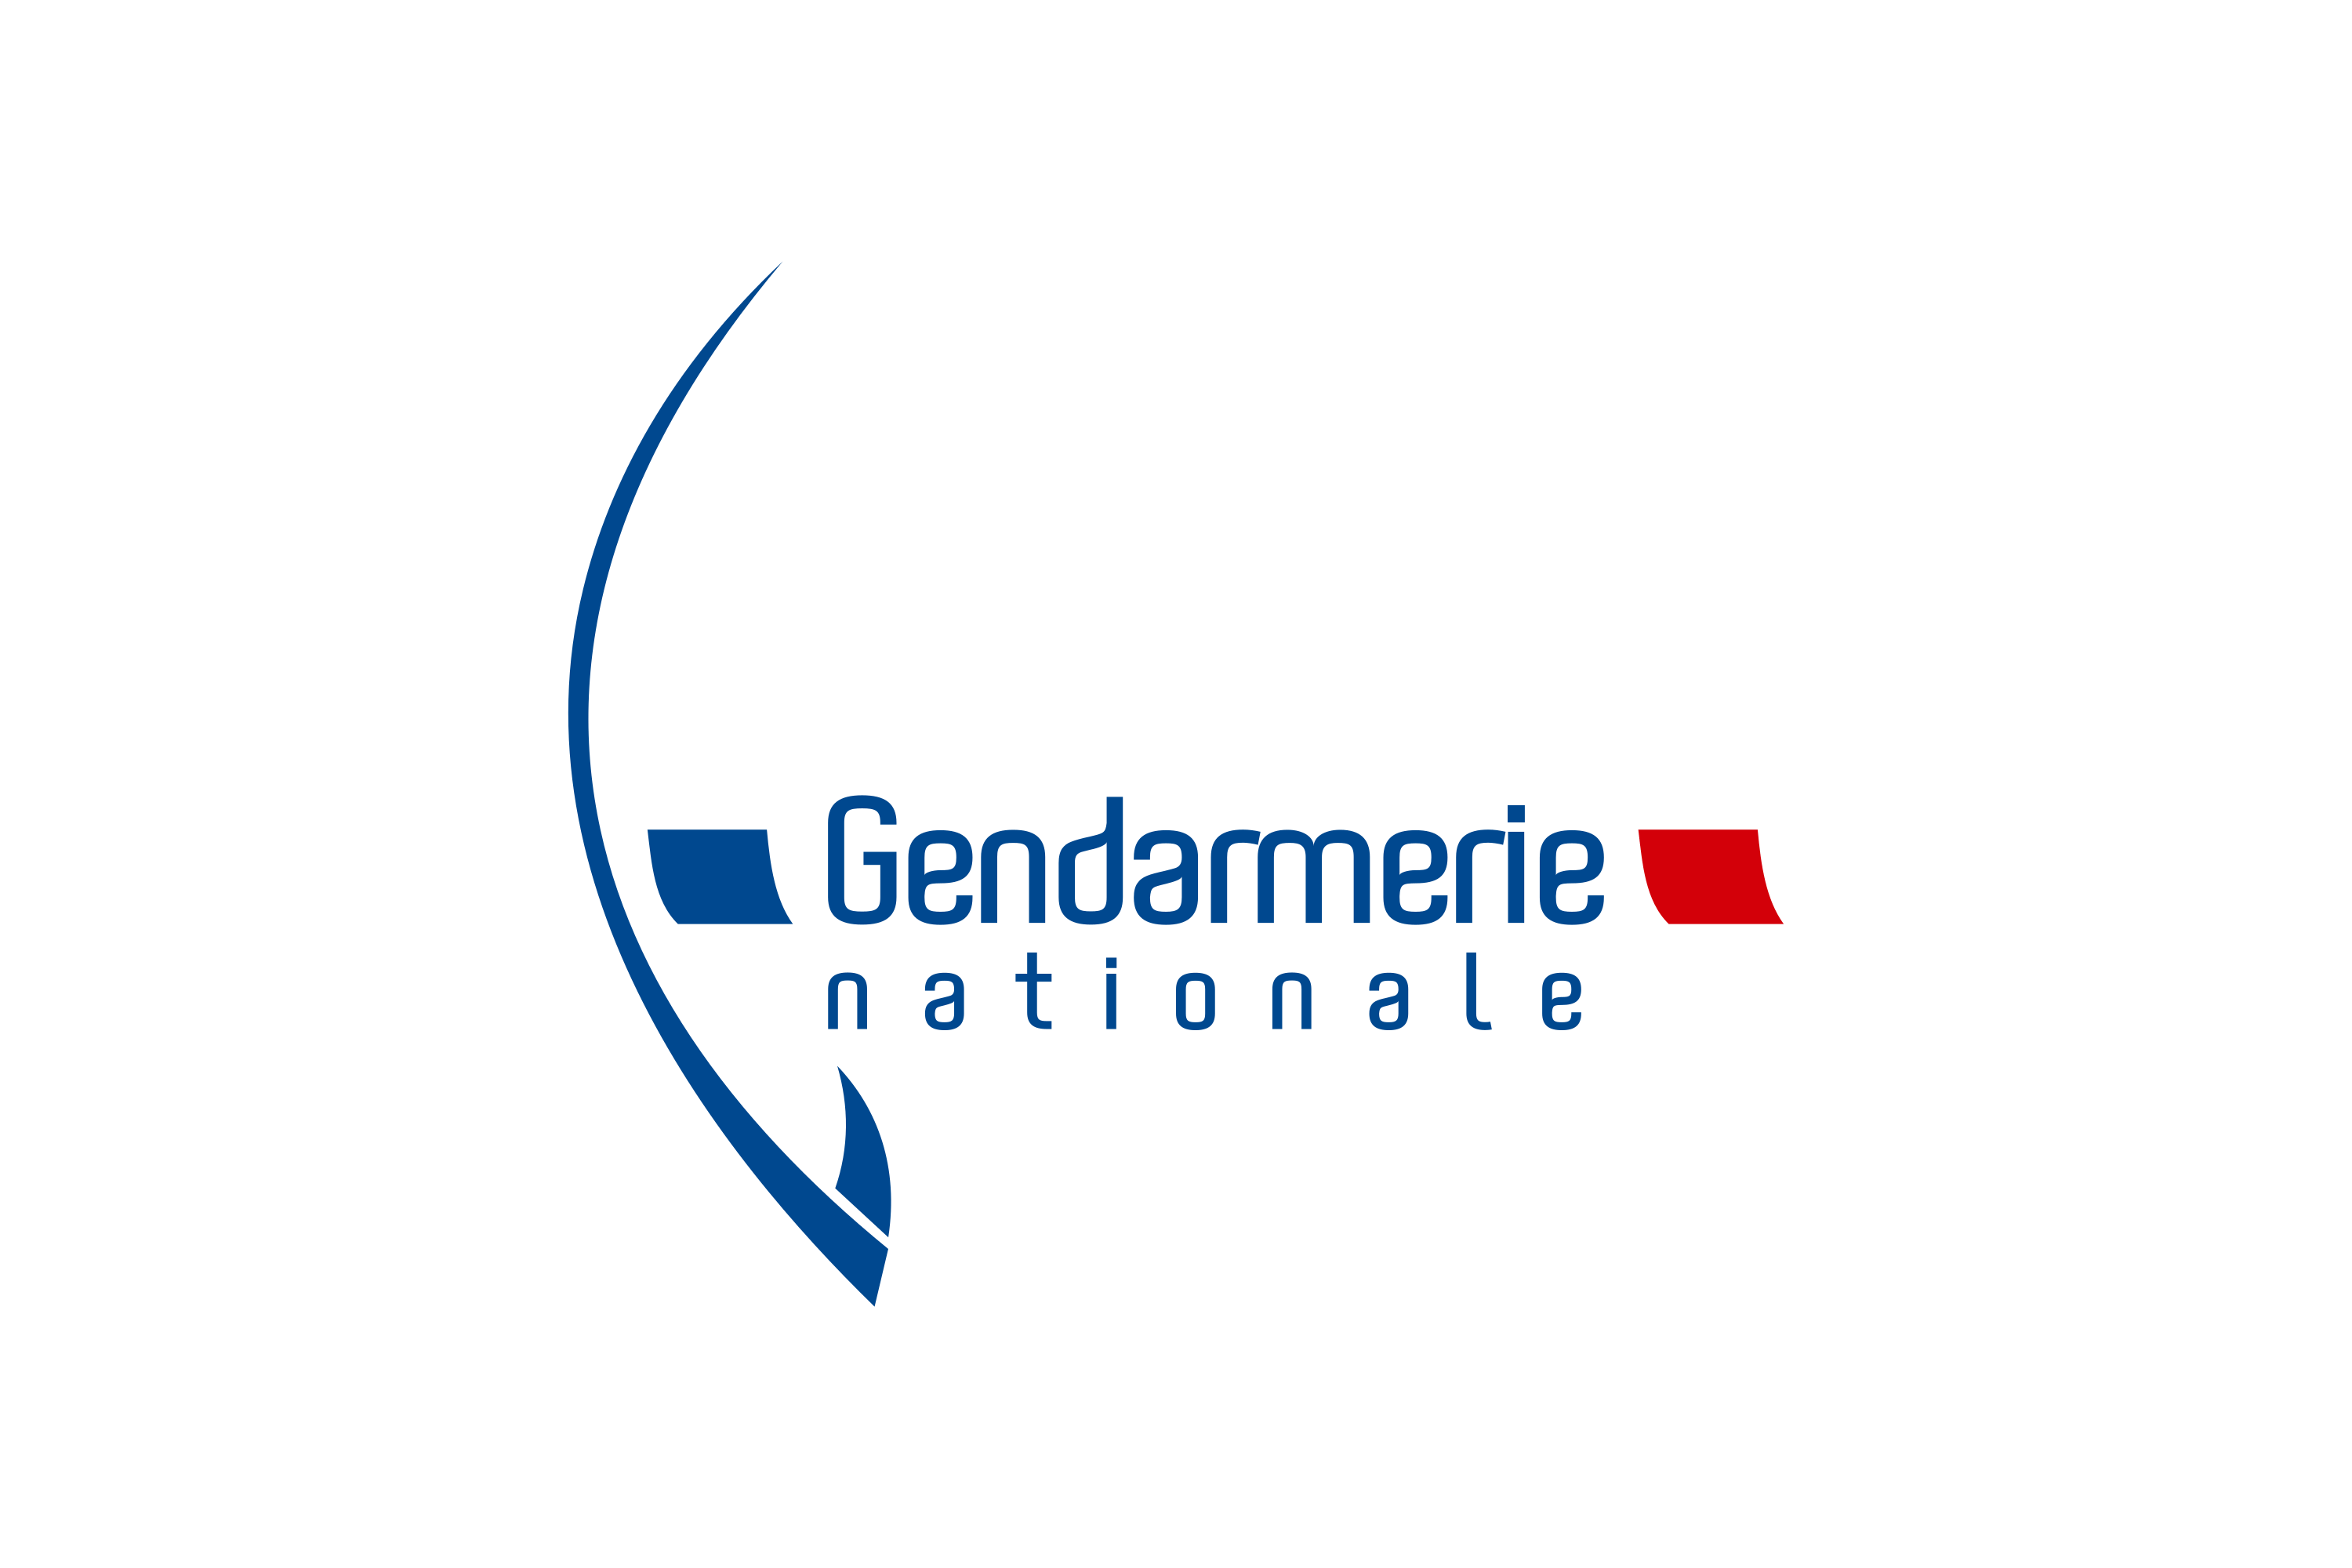 Download National Gendarmerie Logo in SVG Vector or PNG File Format